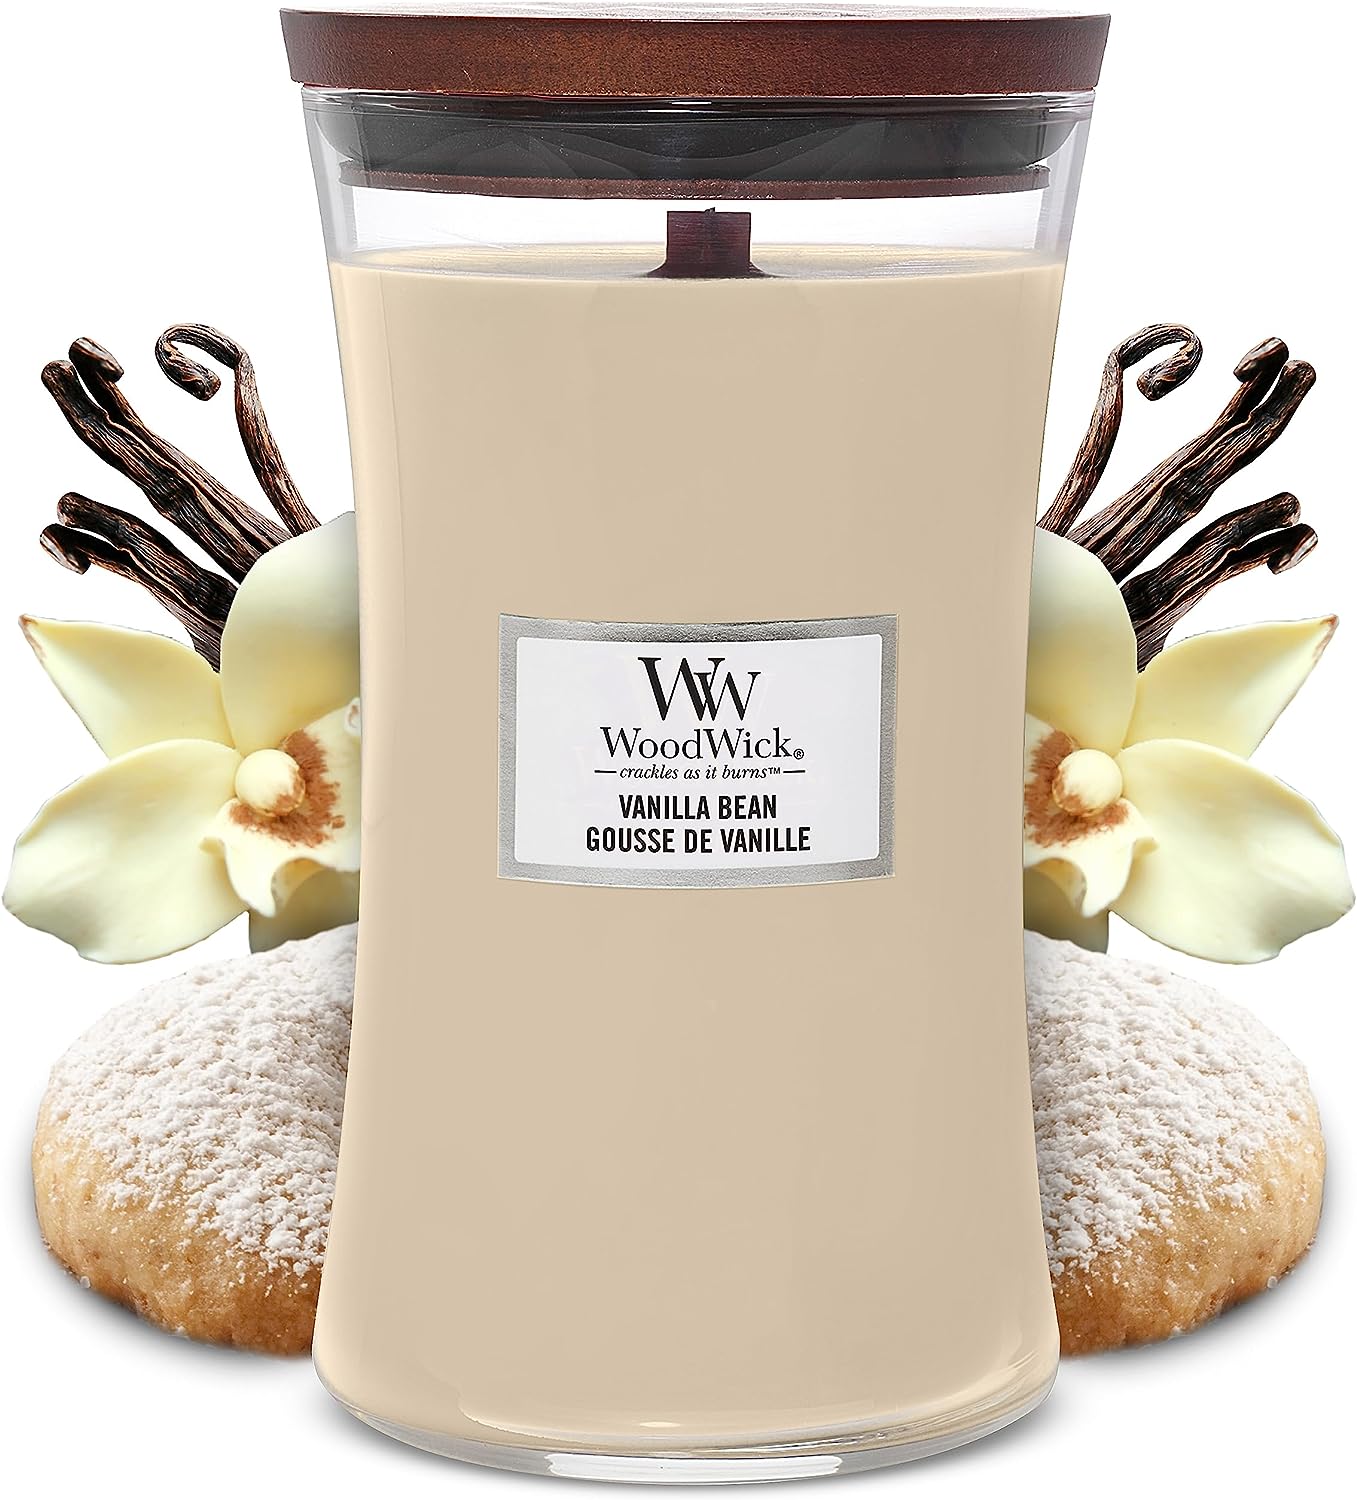 Große WoodWick Duftkerze im Sanduhrglas mit knisterndem Docht, Black Cherry, bis zu 130 Stunden Brenndauer, vanilla bean